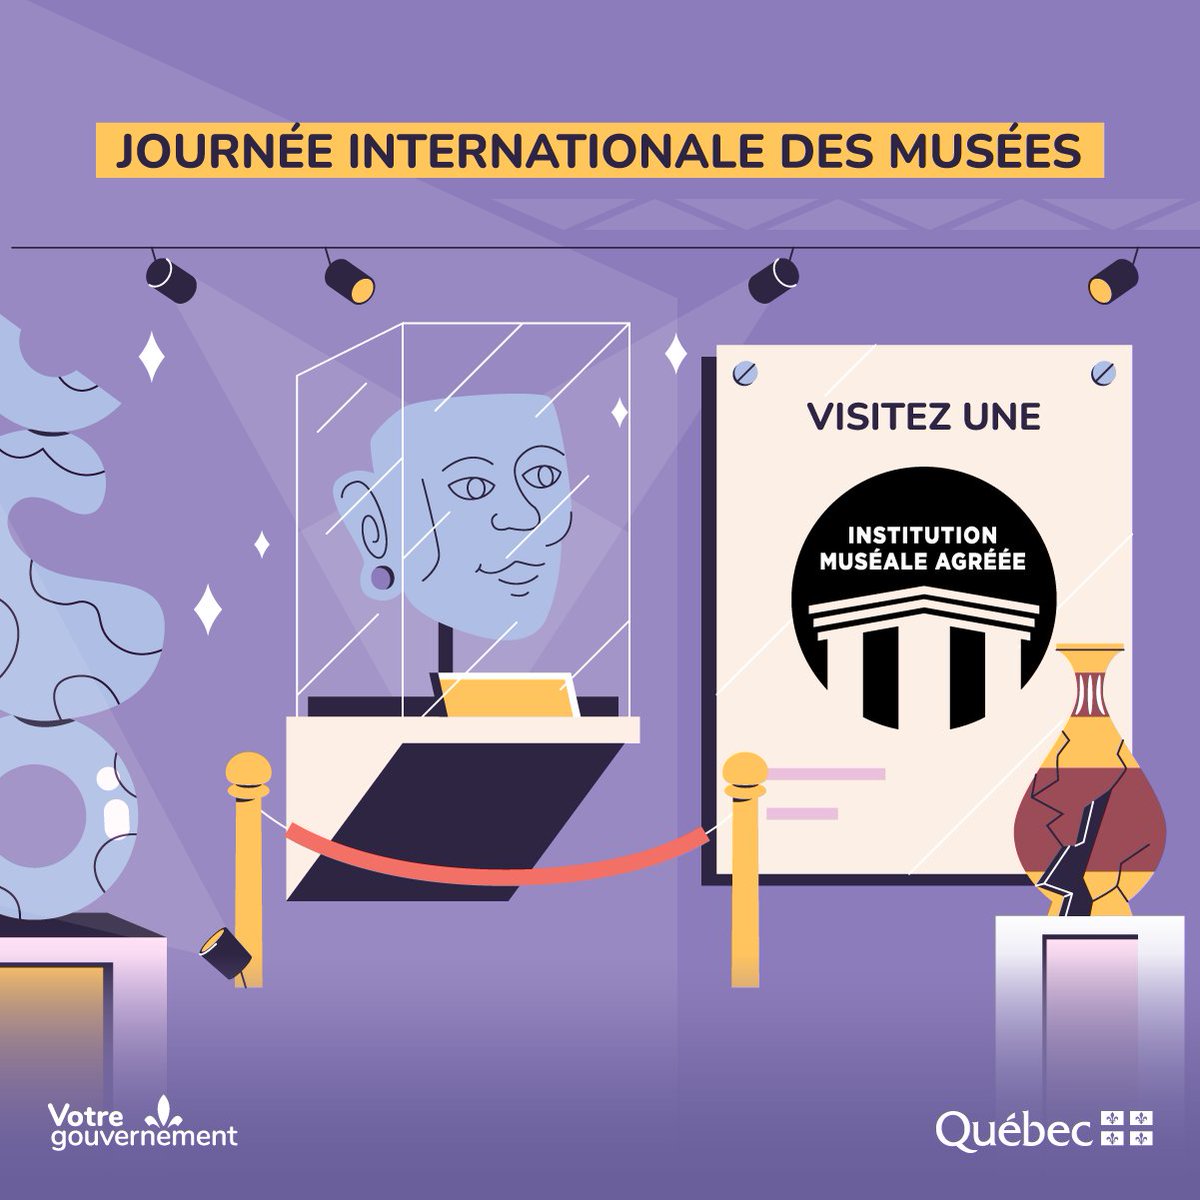 [Journée internationale des musées] 🏛️

Profitez de la longue fin de semaine pour planifier une visite dans une institution muséale agréée du Québec!
➡️ bit.ly/3MrEnom 

#MuséesQc #CultureQc